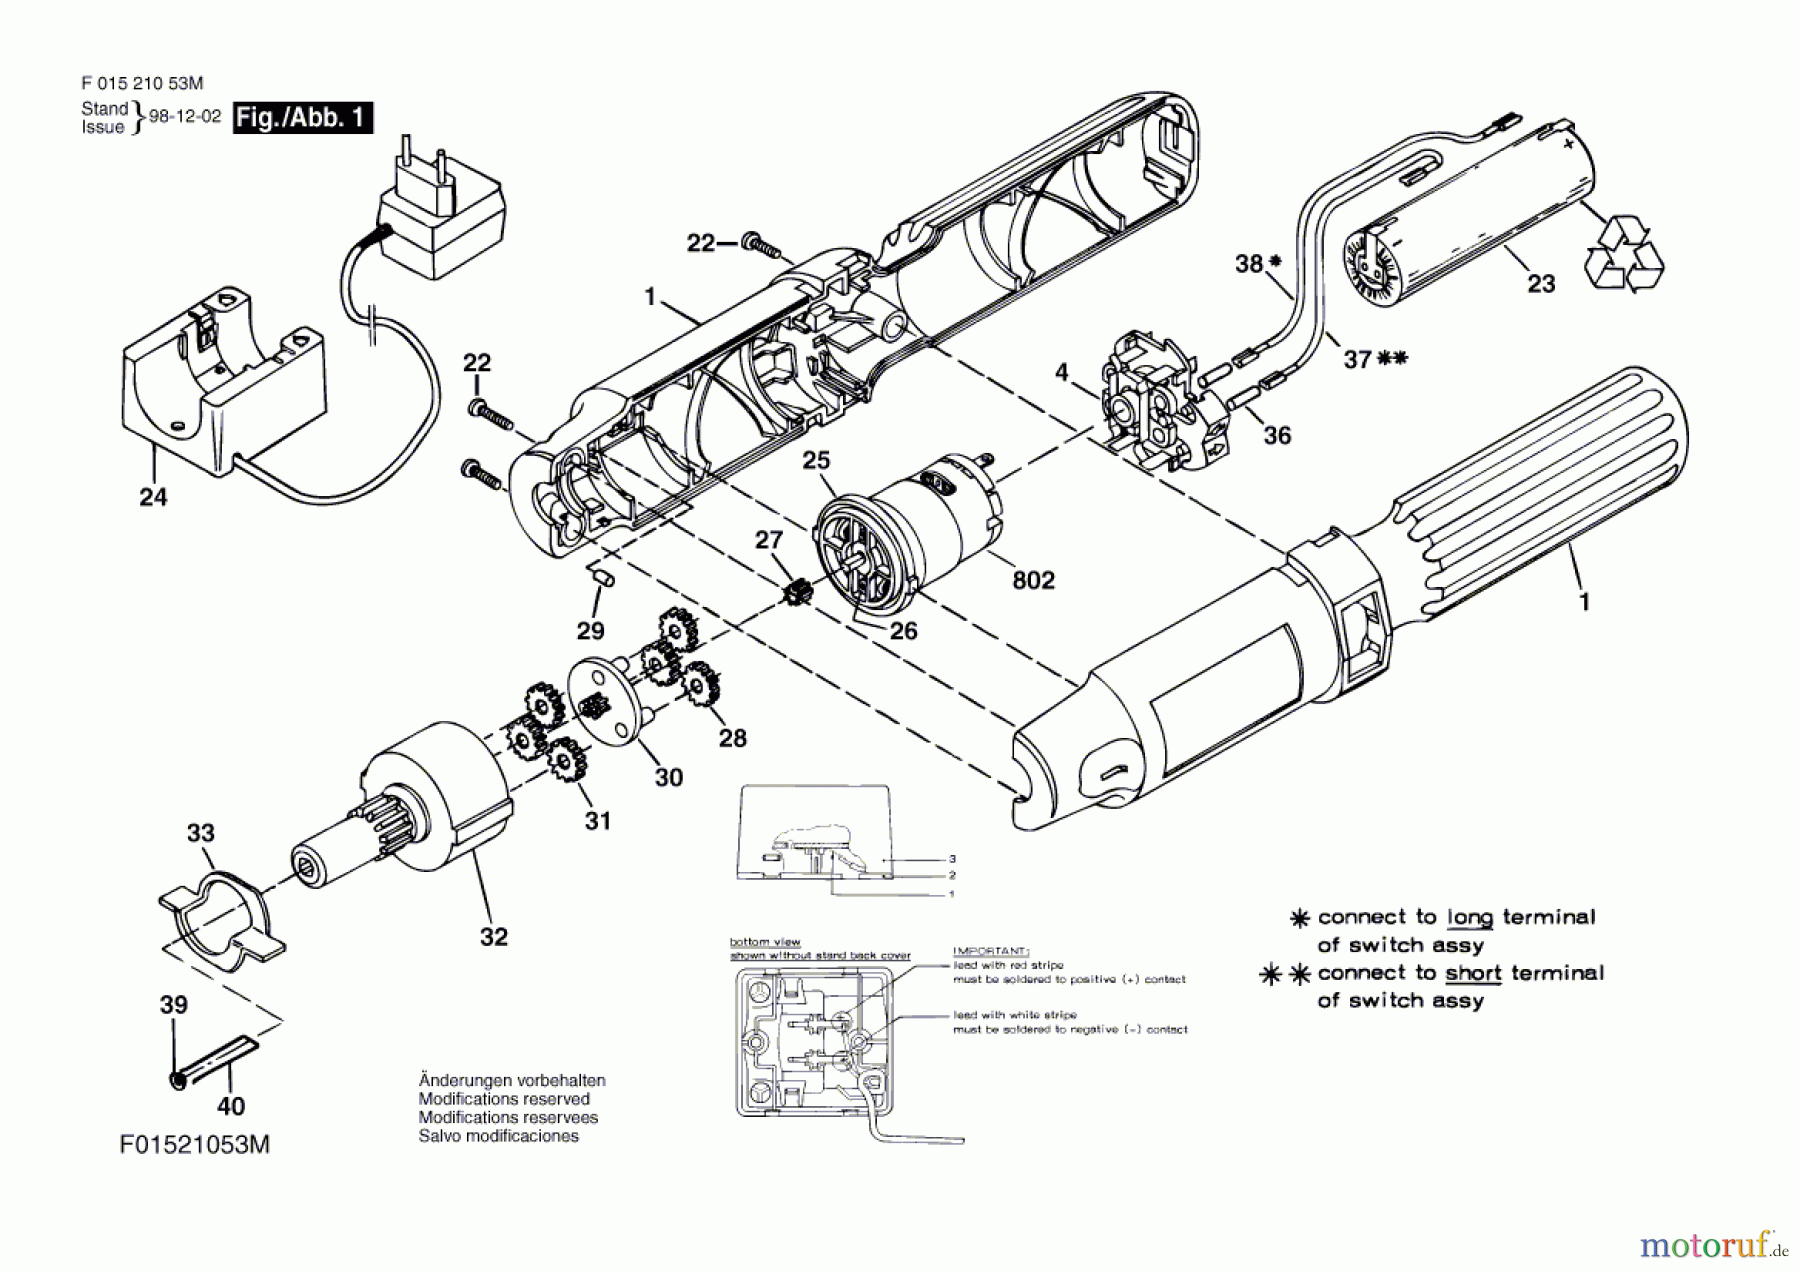  Bosch Akku Werkzeug Akku-Schrauber 2105 Seite 1